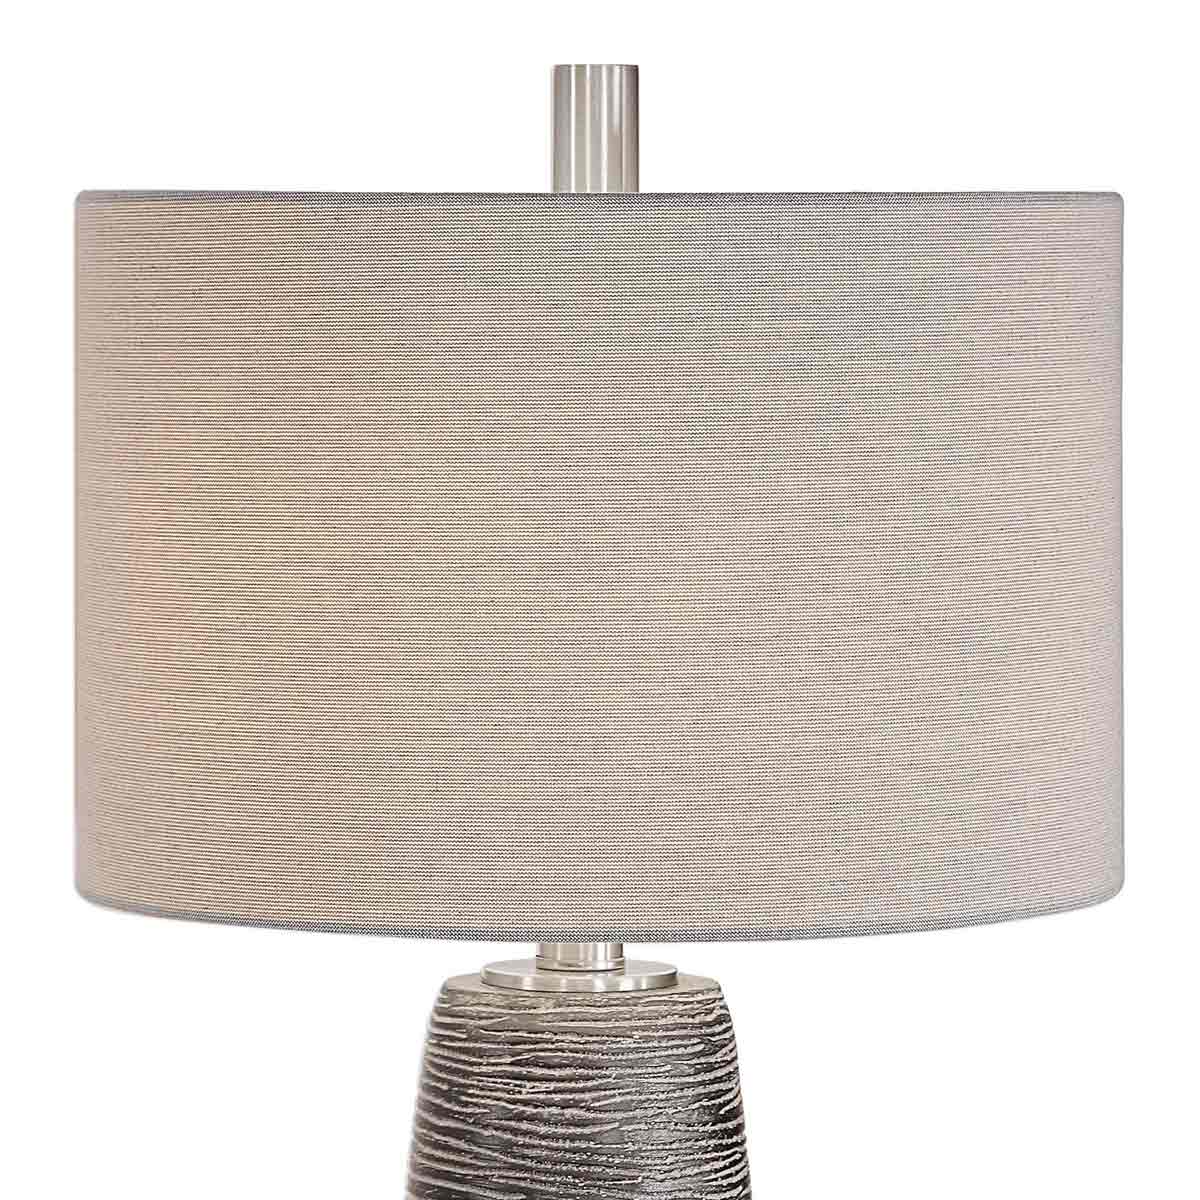 ABC Accent ABC-26025-1 Table Lamp - Dark Rustic Bronze